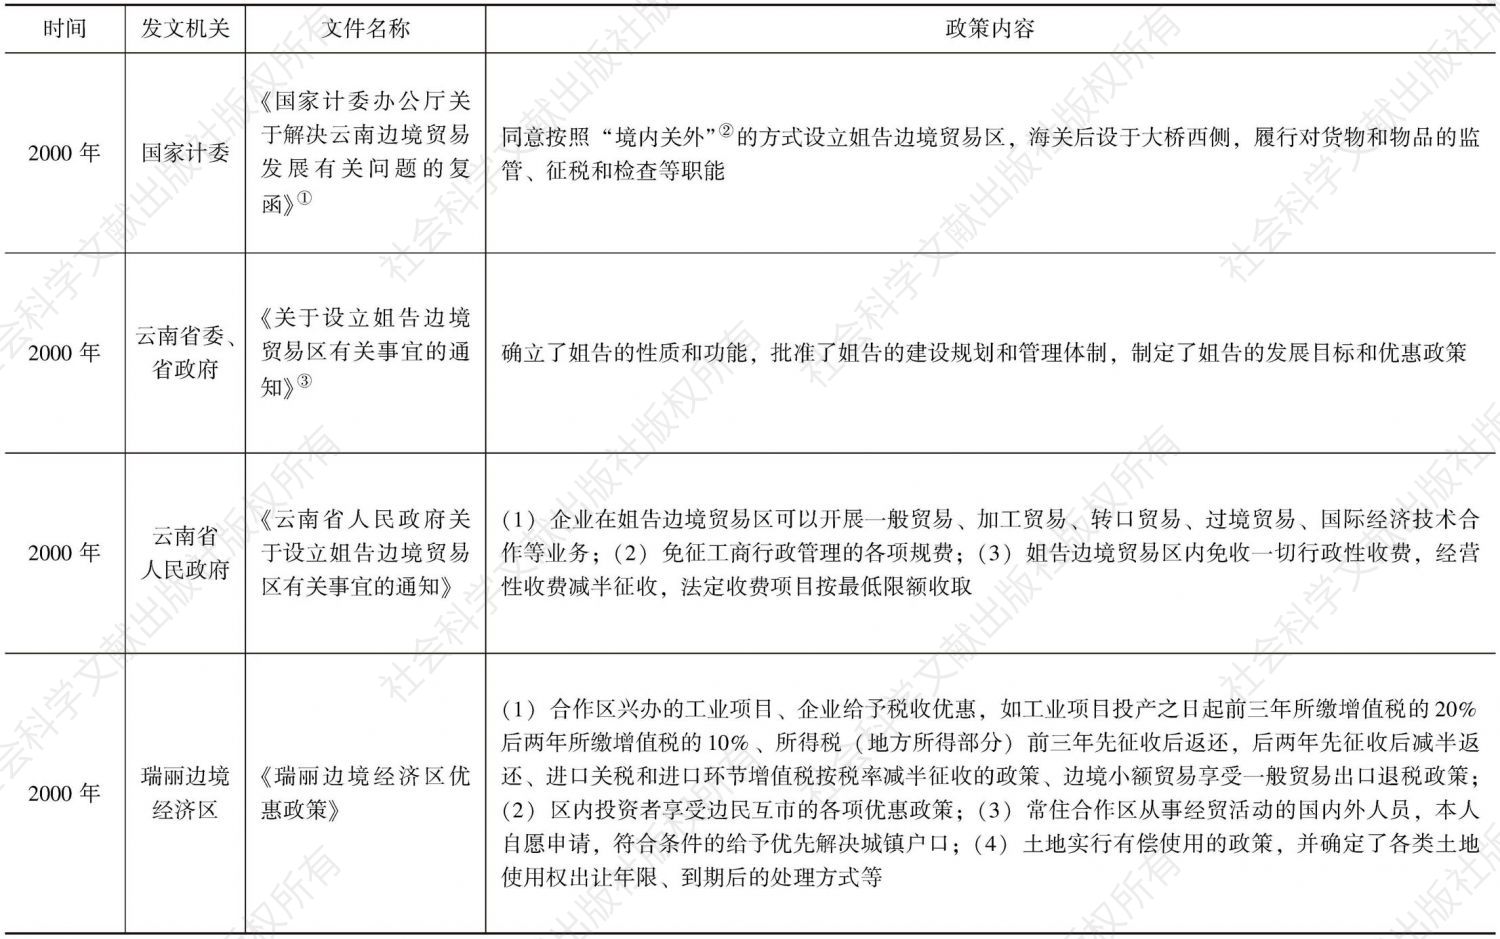 表7-1 云南省促进滇西少数民族地区投资贸易政策整理